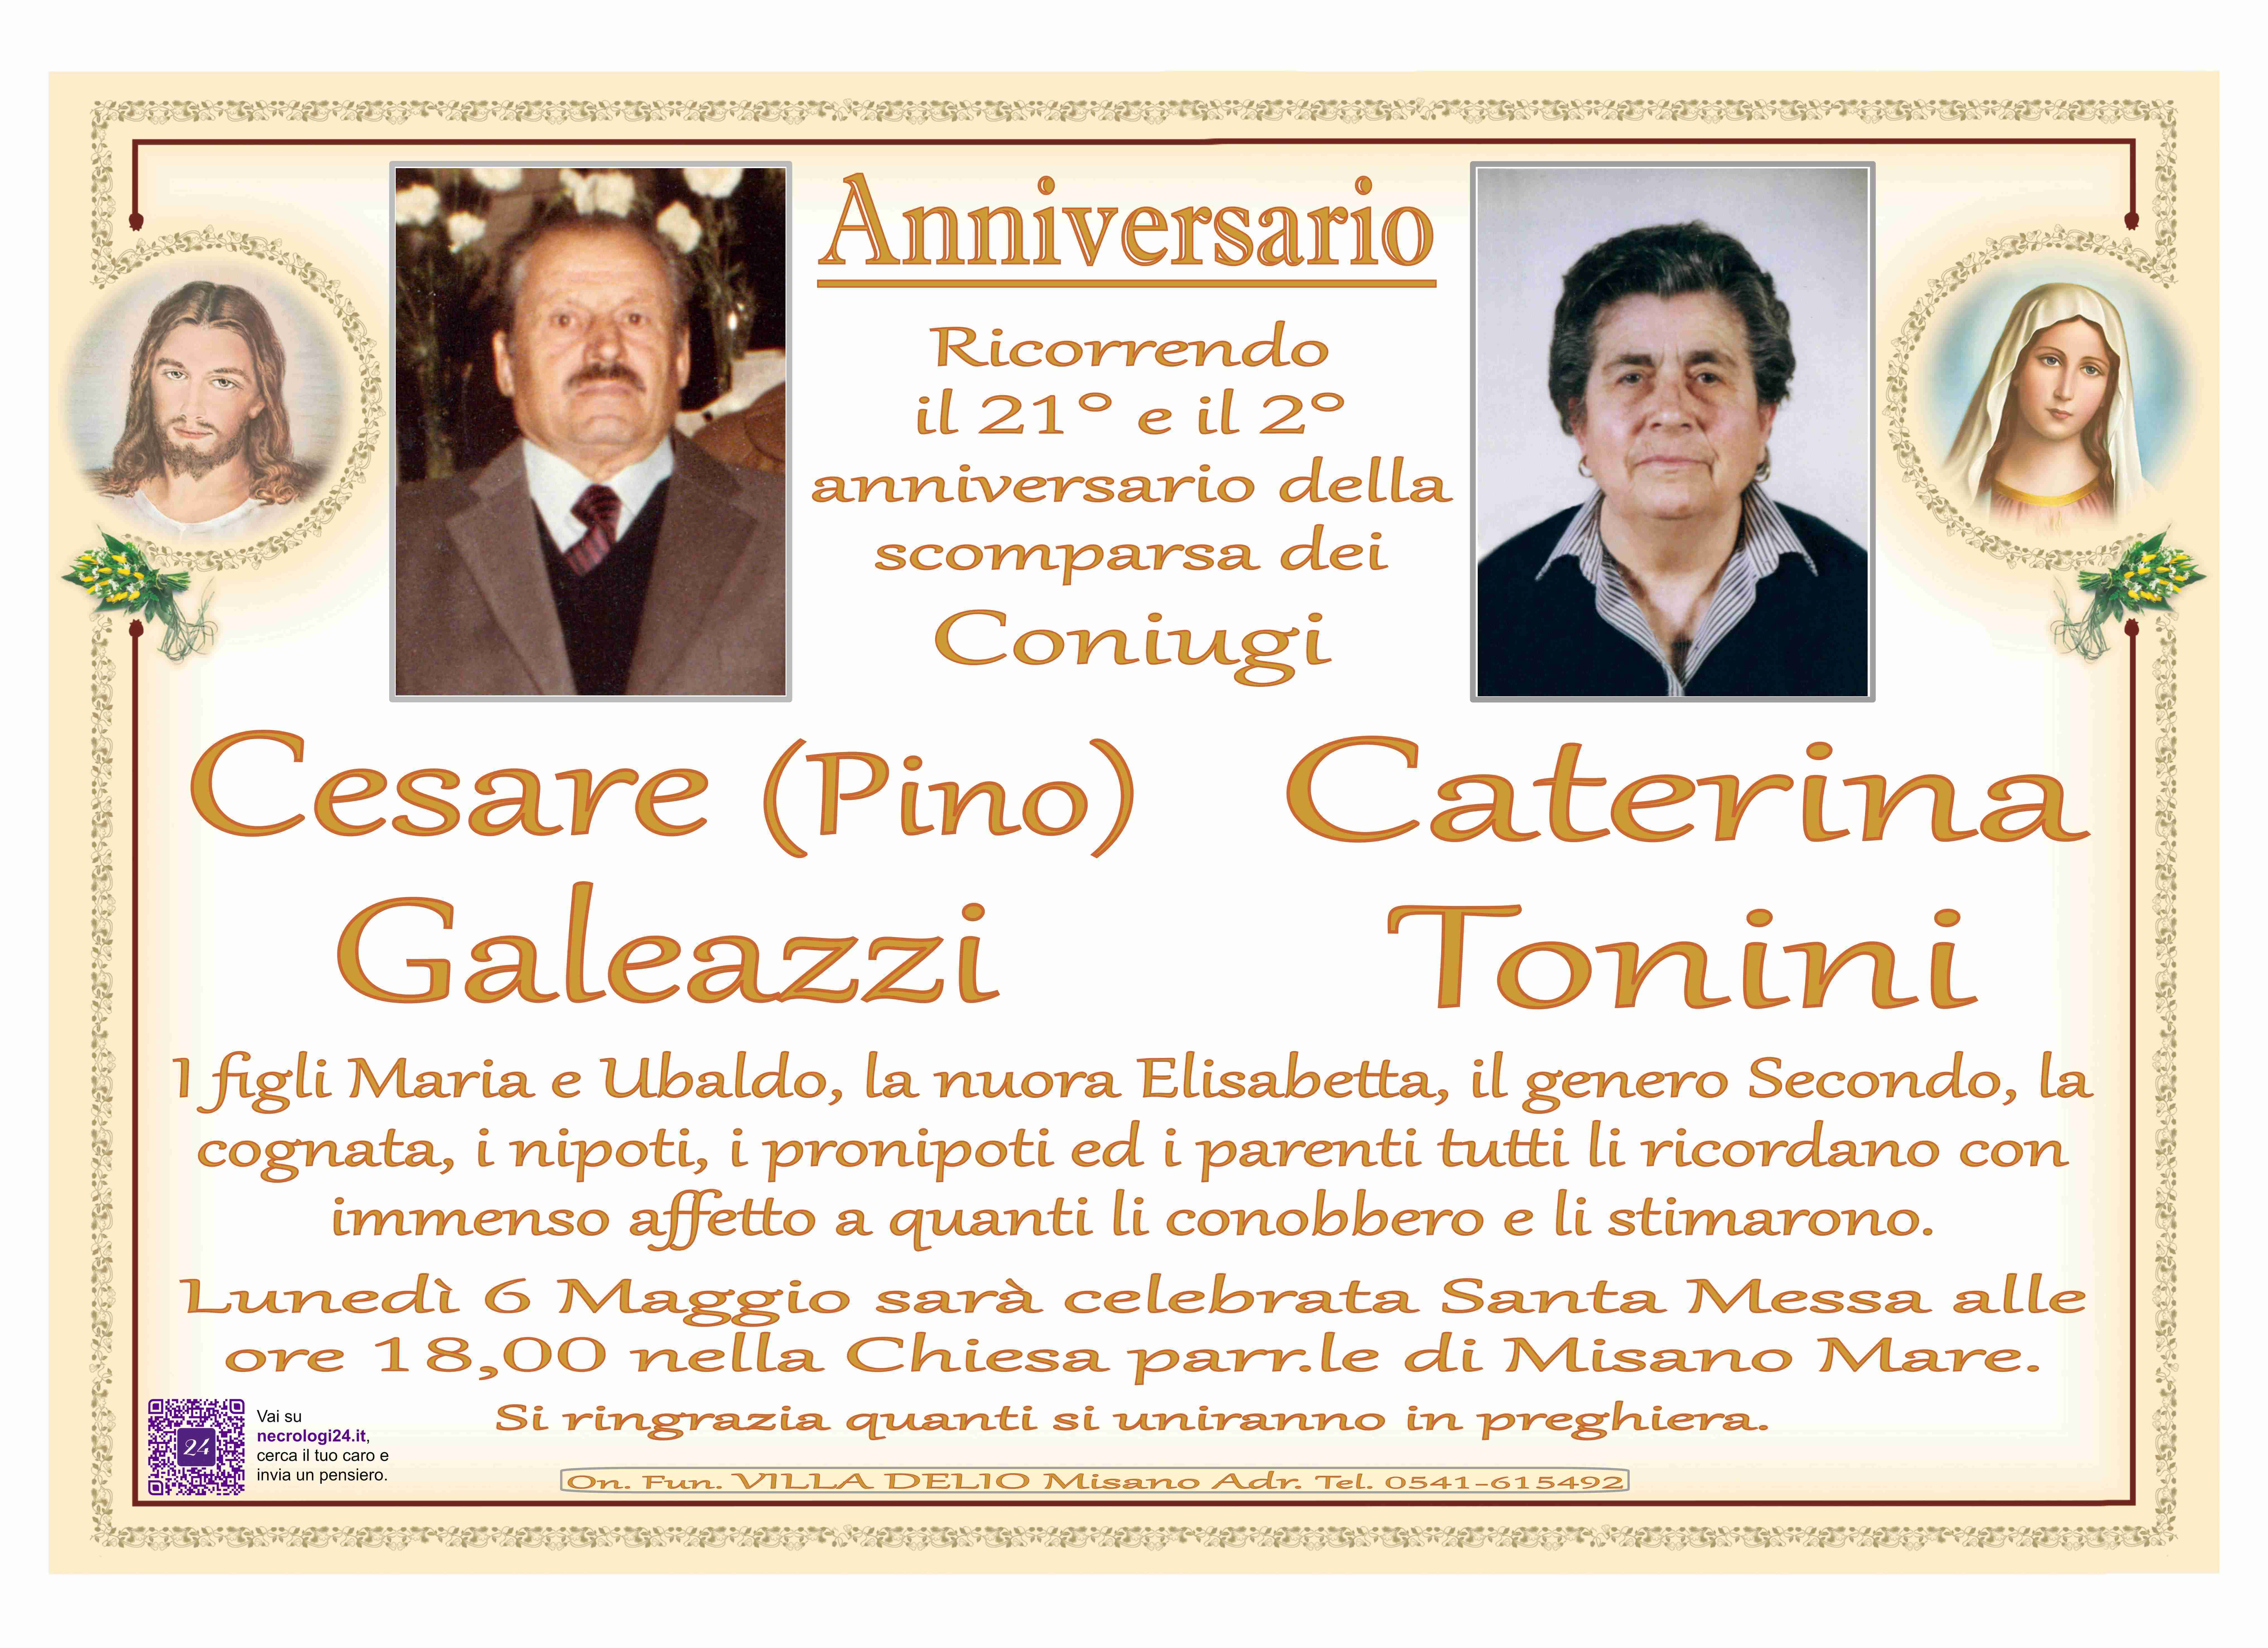 Cesare (Pino) Galeazzi e Caterina Tonini